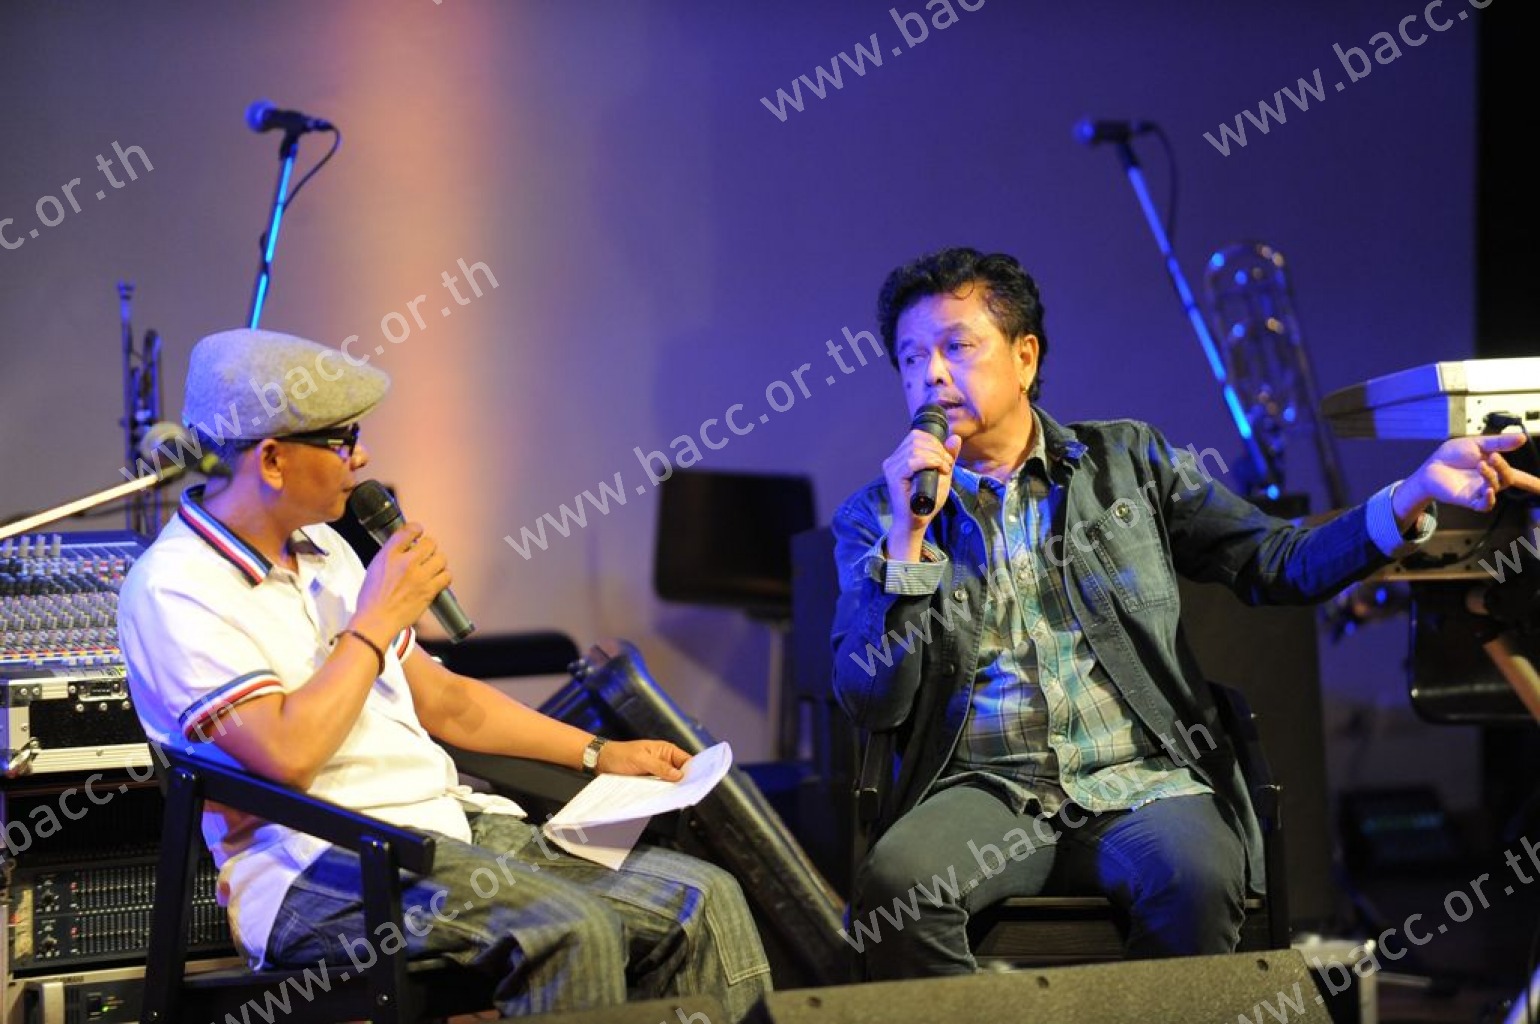 Bangkok Music Forum ครั้งที่ 9 : “62 ปี กวีศรีชาวไร่ - พงษ์เทพ กระโดนชำนาญ”